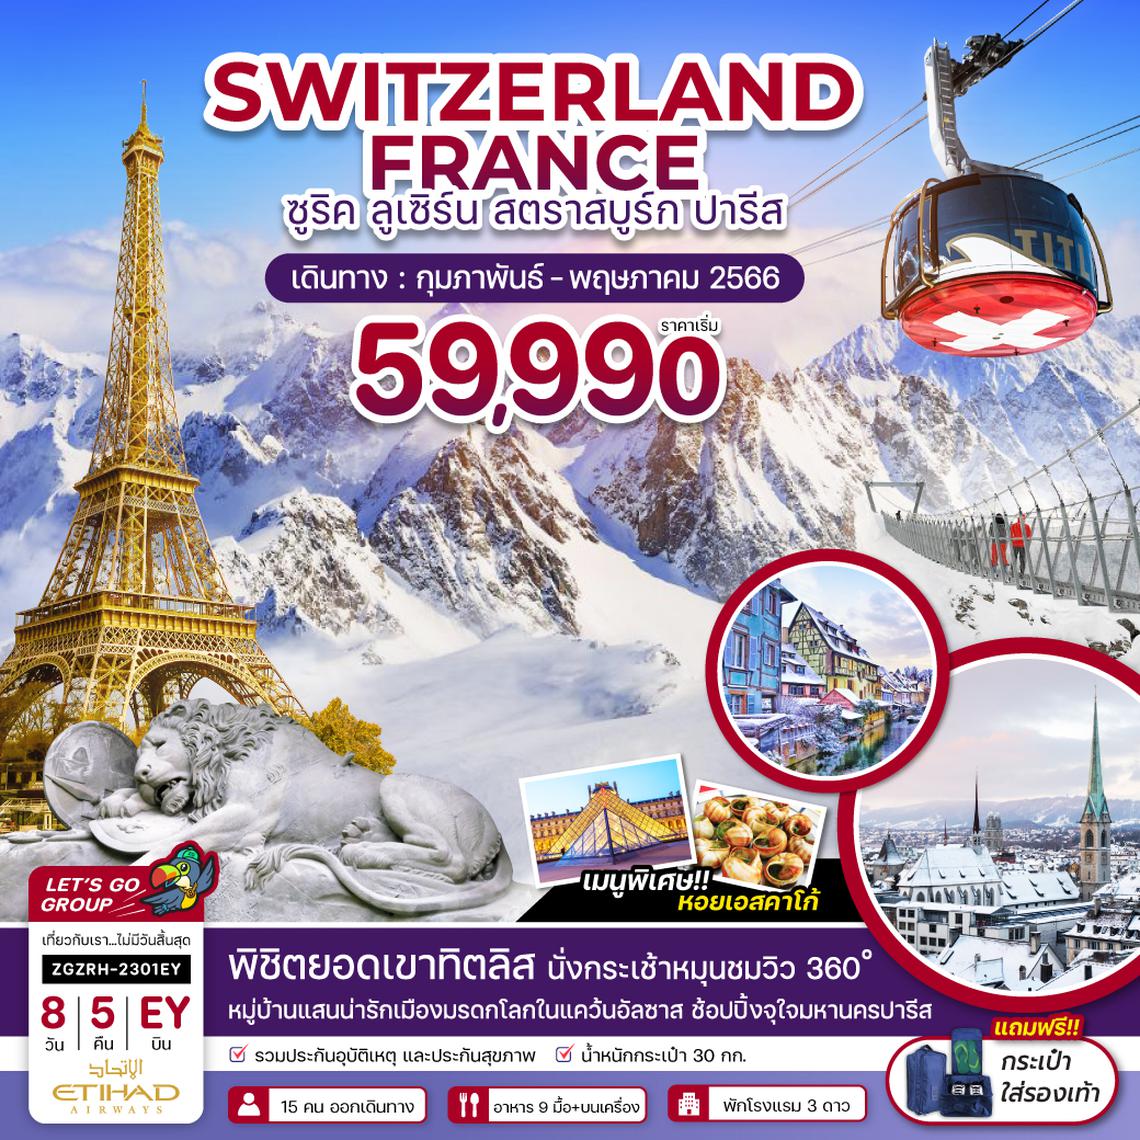 สวิตเซอร์แลนด์ ฝรั่งเศส ลูเซิร์น ซูริค สตราสบูร์ก ปารีส 8 วัน 5 คืน โดยสายการบิน Etihad Airways (EY)